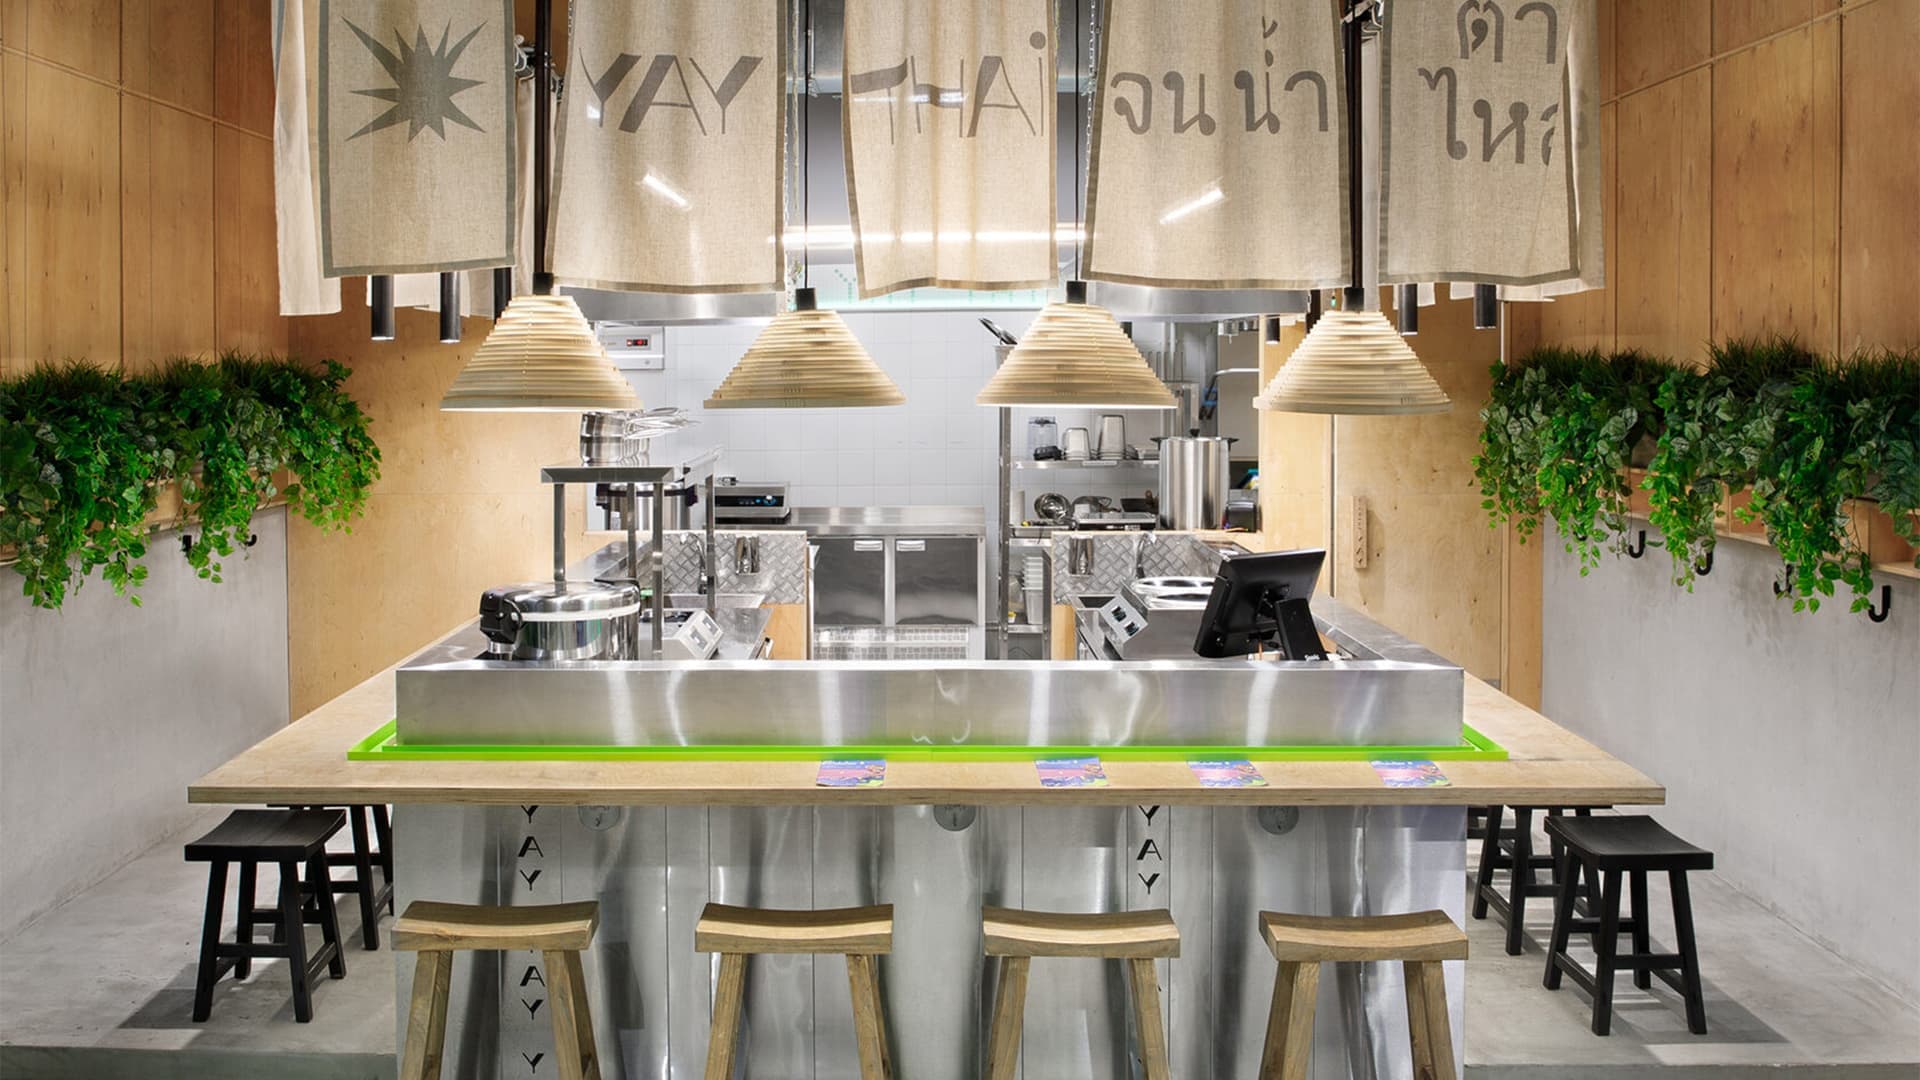 Яркий интерьер кафе тайской кухни с неоновыми деталями — проект студии Miyao